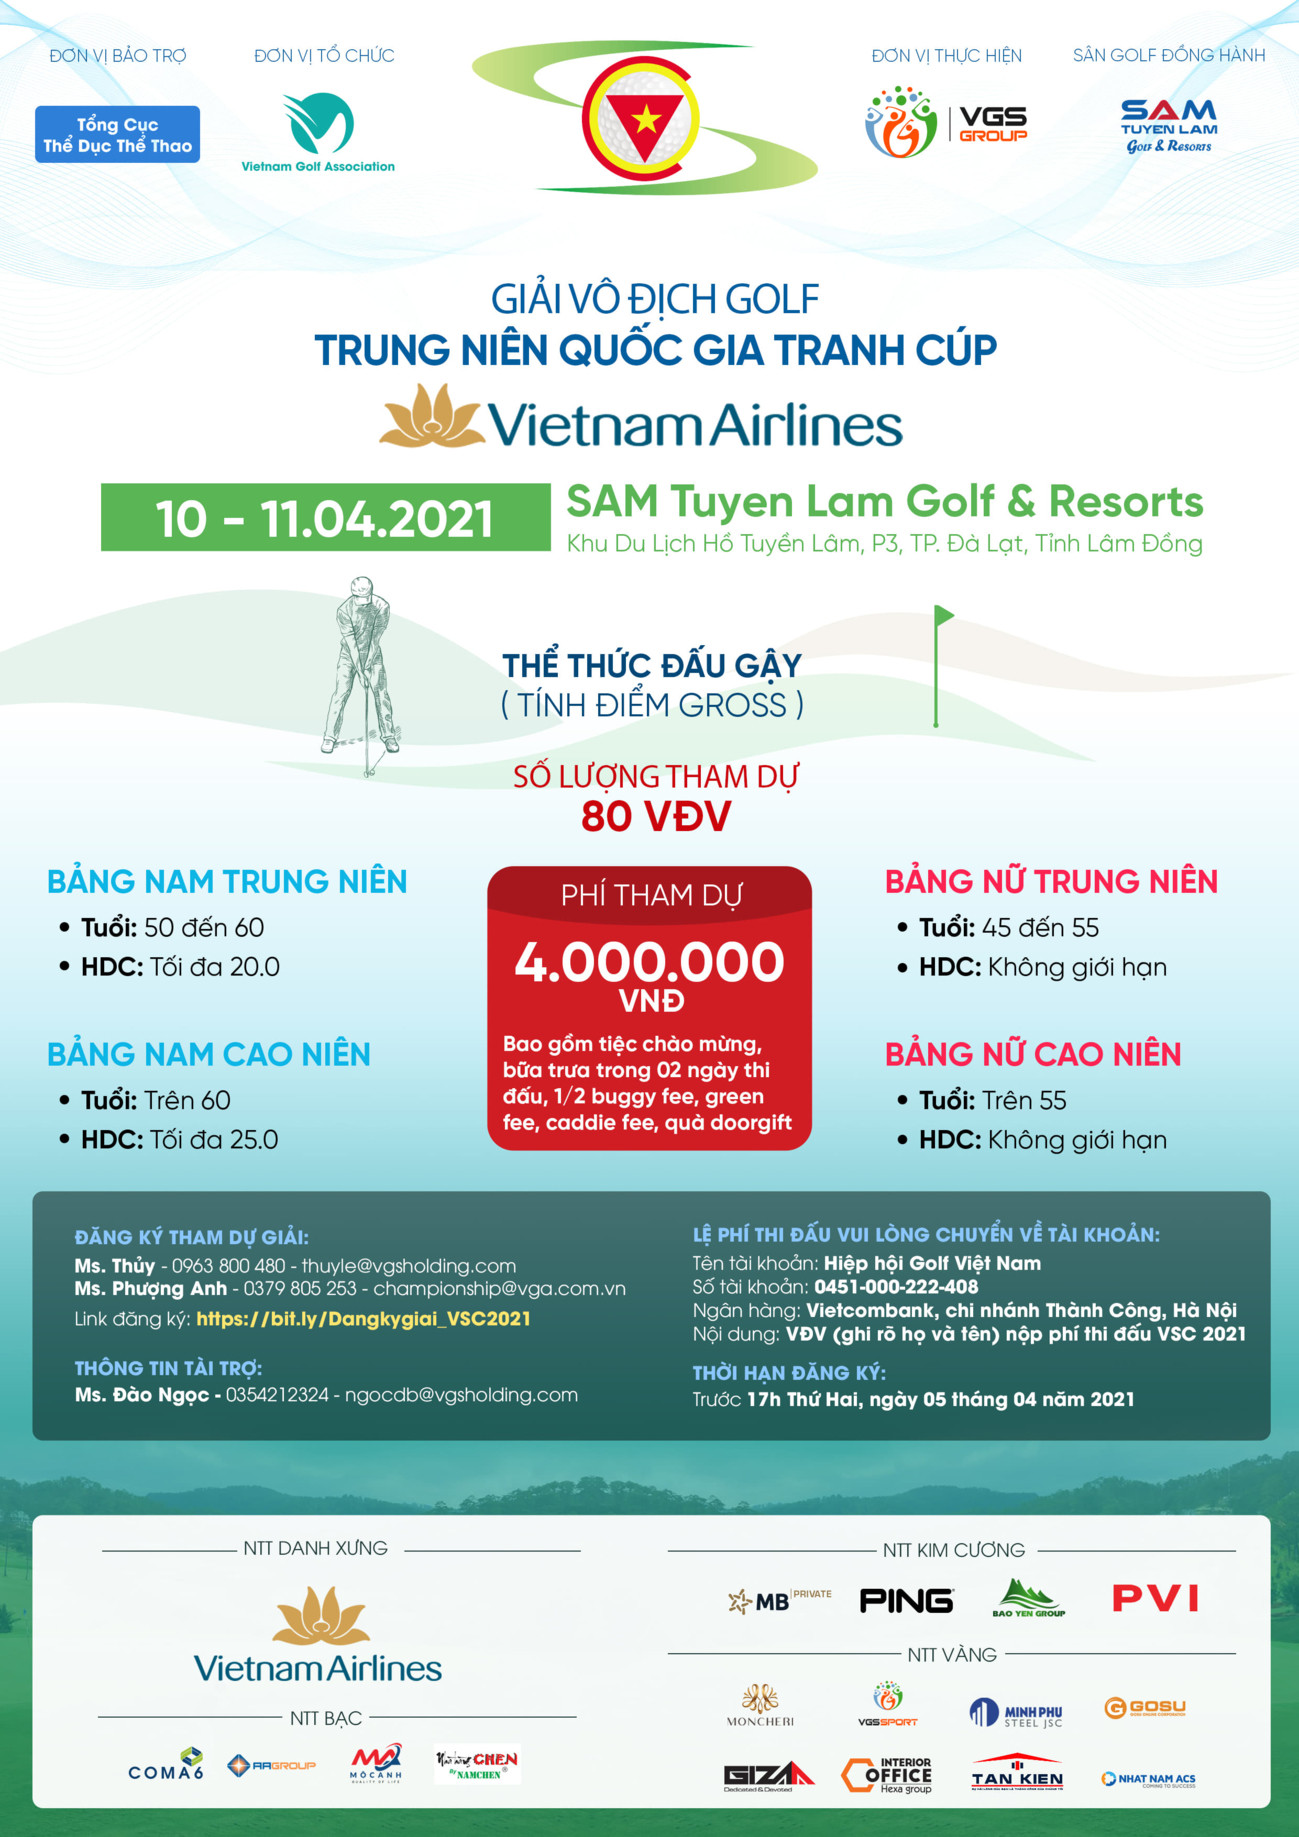 Vô địch Trung niên Quốc Gia 2021 tranh cúp Vietnam Airlines: Hai nhà vô địch trở lại bảo vệ danh hiệu - Ảnh 1.